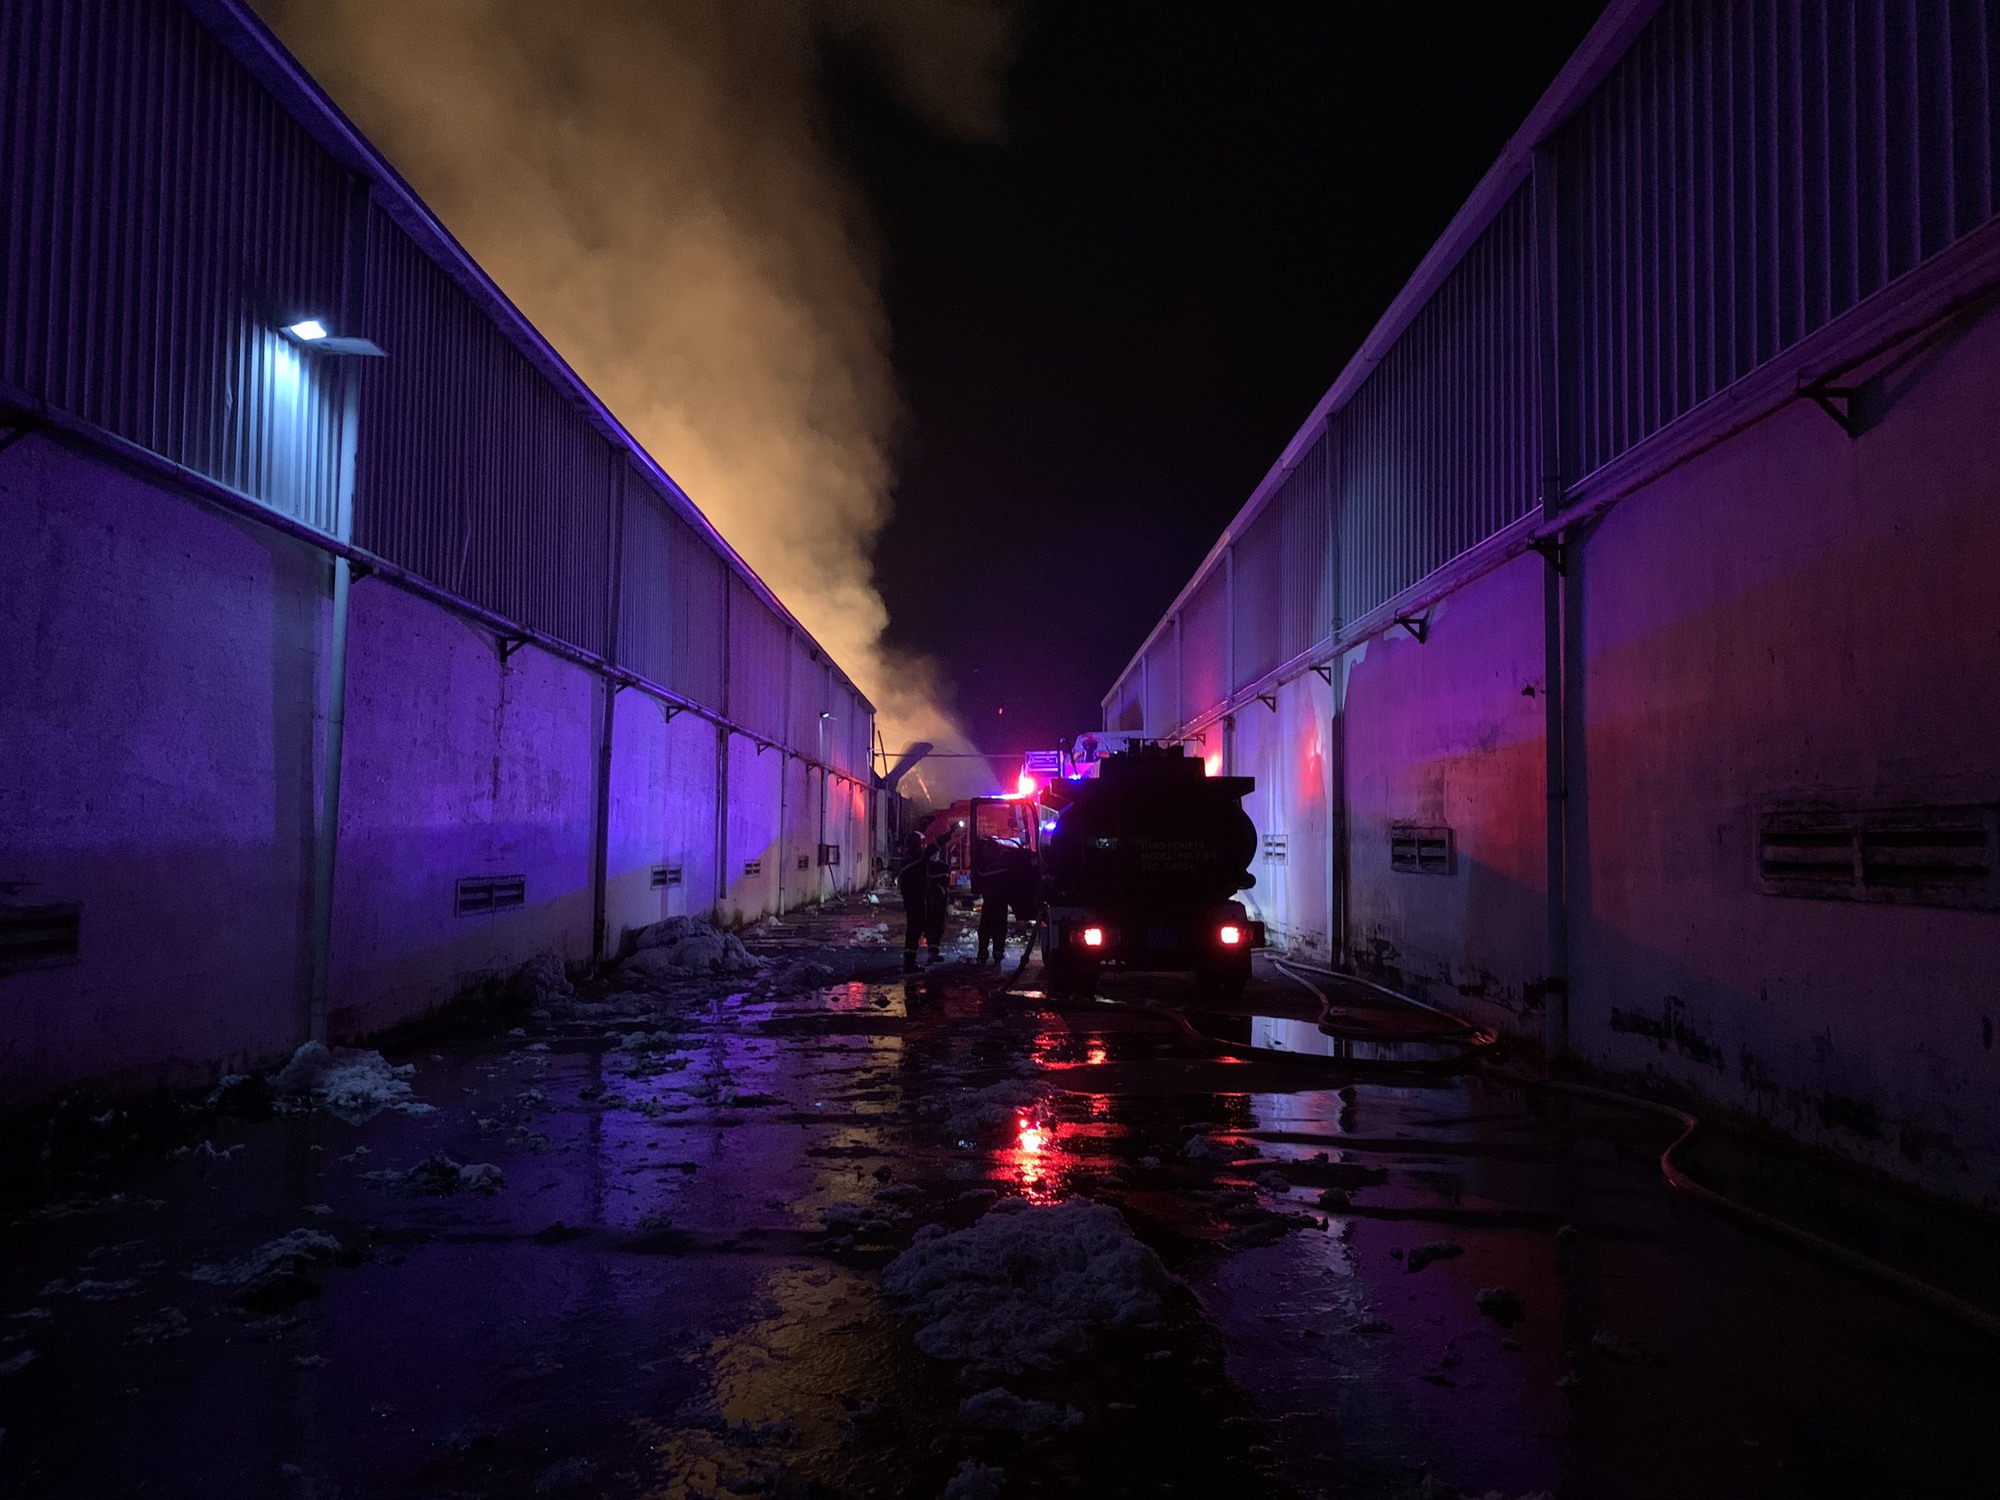 Cháy lớn tại Công ty TNHH MeiSheng Textiles Việt Nam, thiệt hại khoảng 30 tỷ đồng - Ảnh 2.